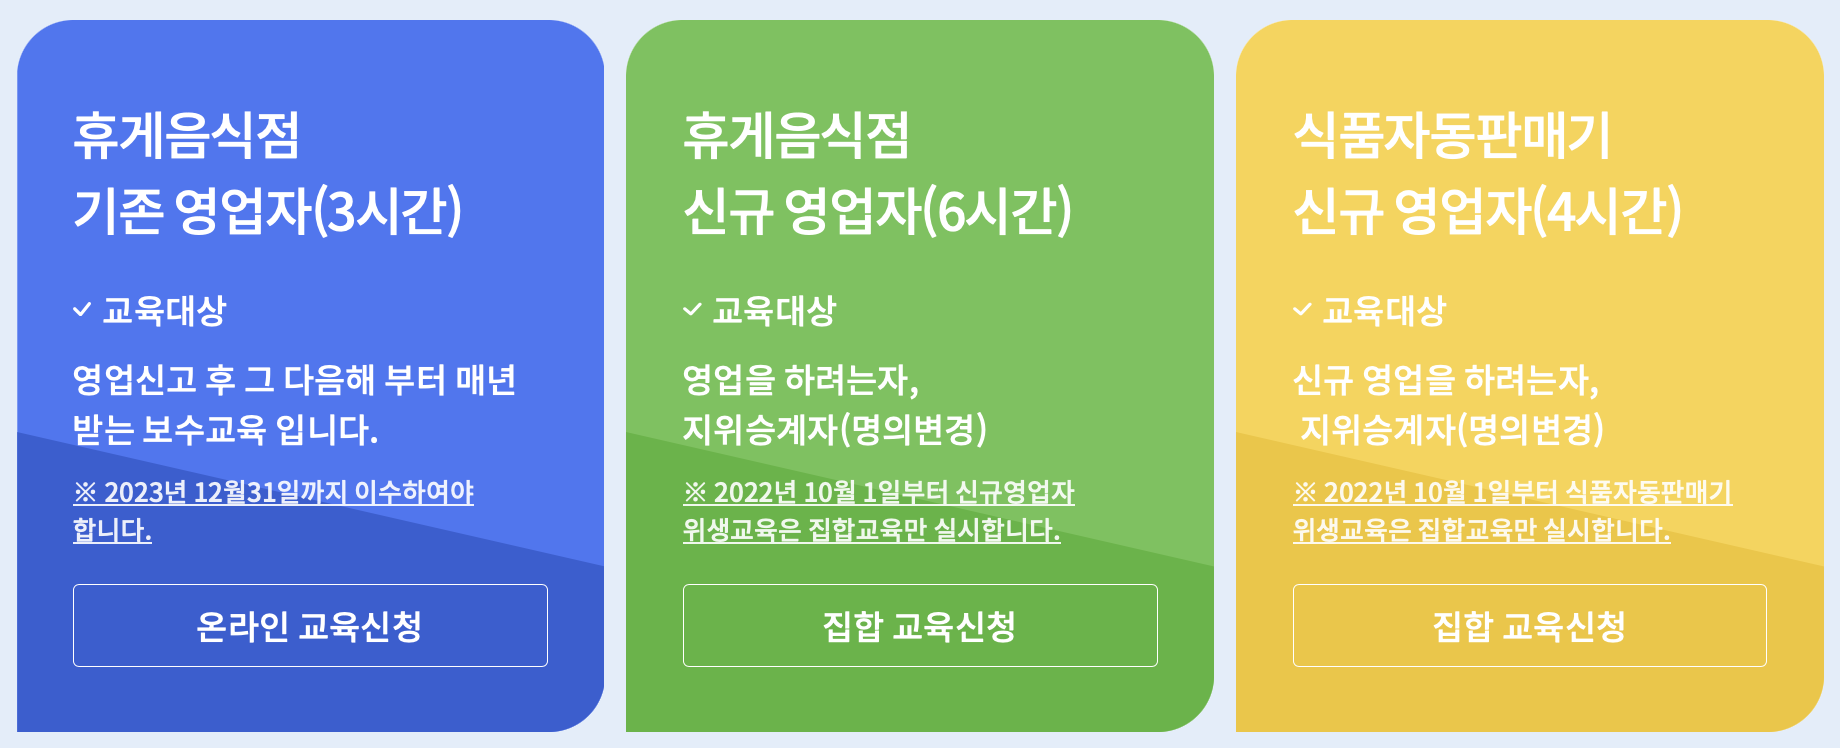 한국휴게음식업중앙회_교육